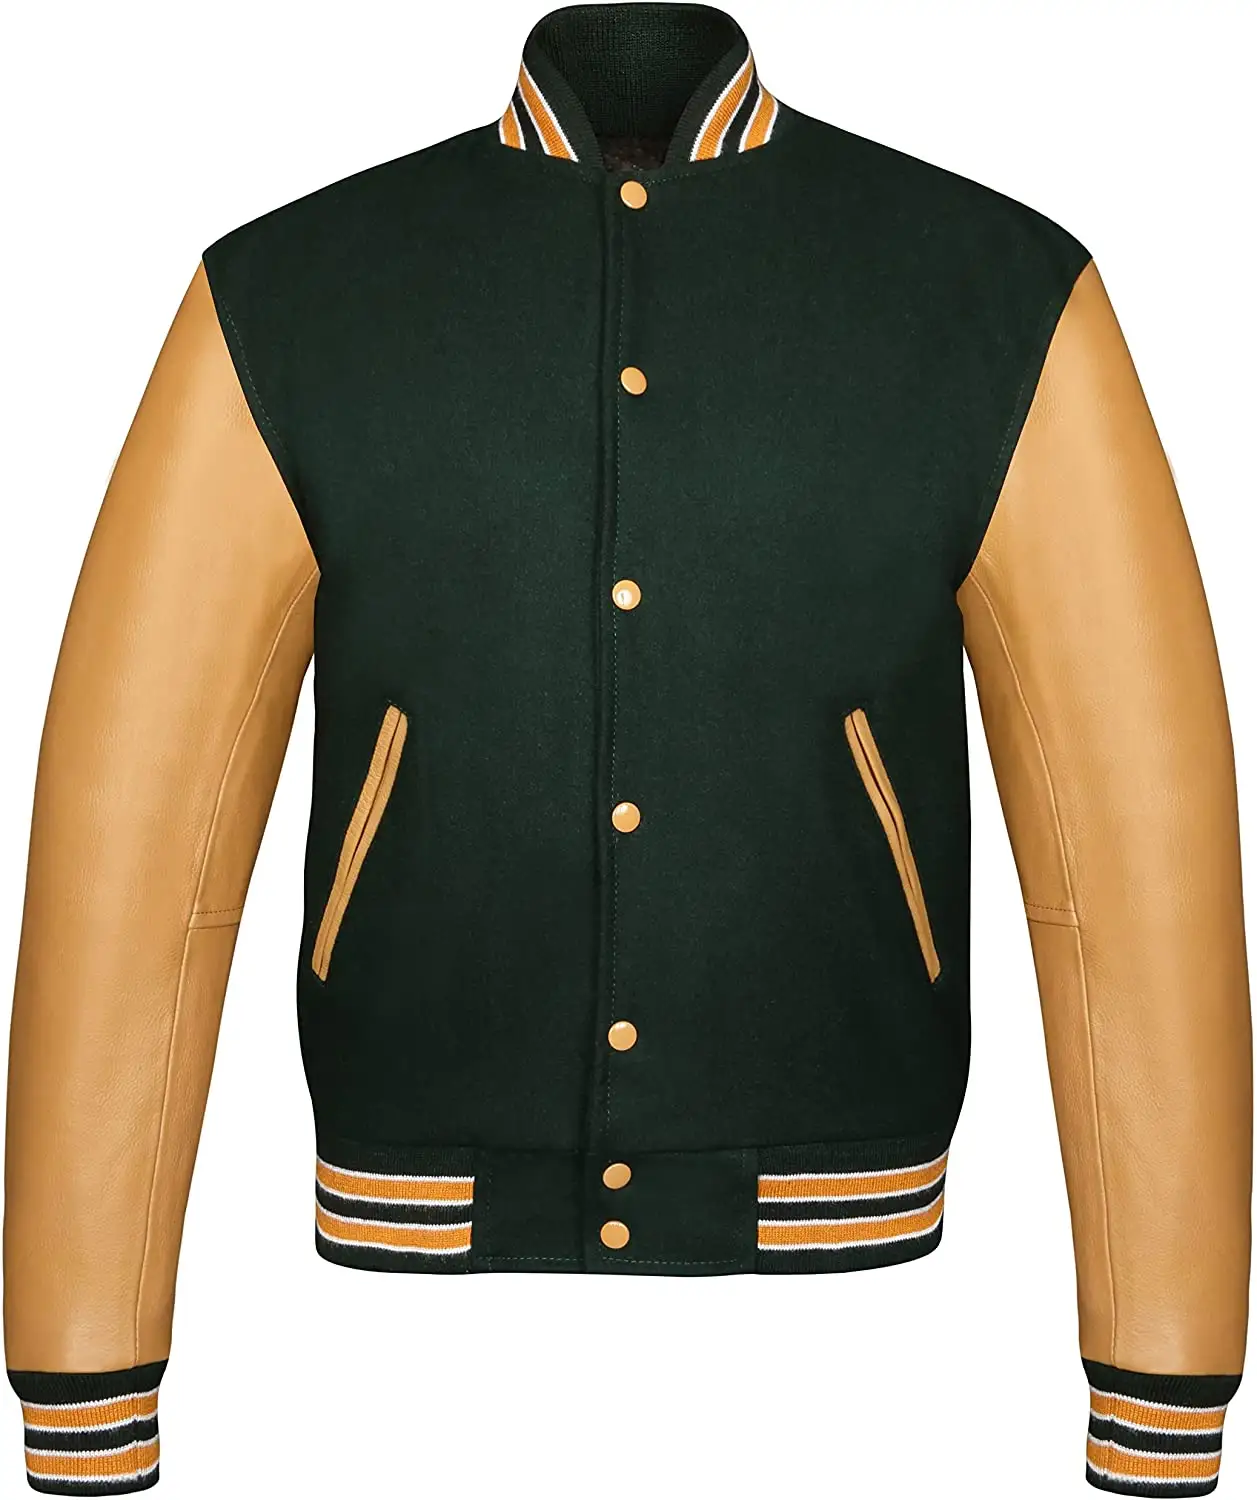 Giacca leggera personalizzata in stile Letterman a basso prezzo Casual giacca da college personalizzata da college Collage